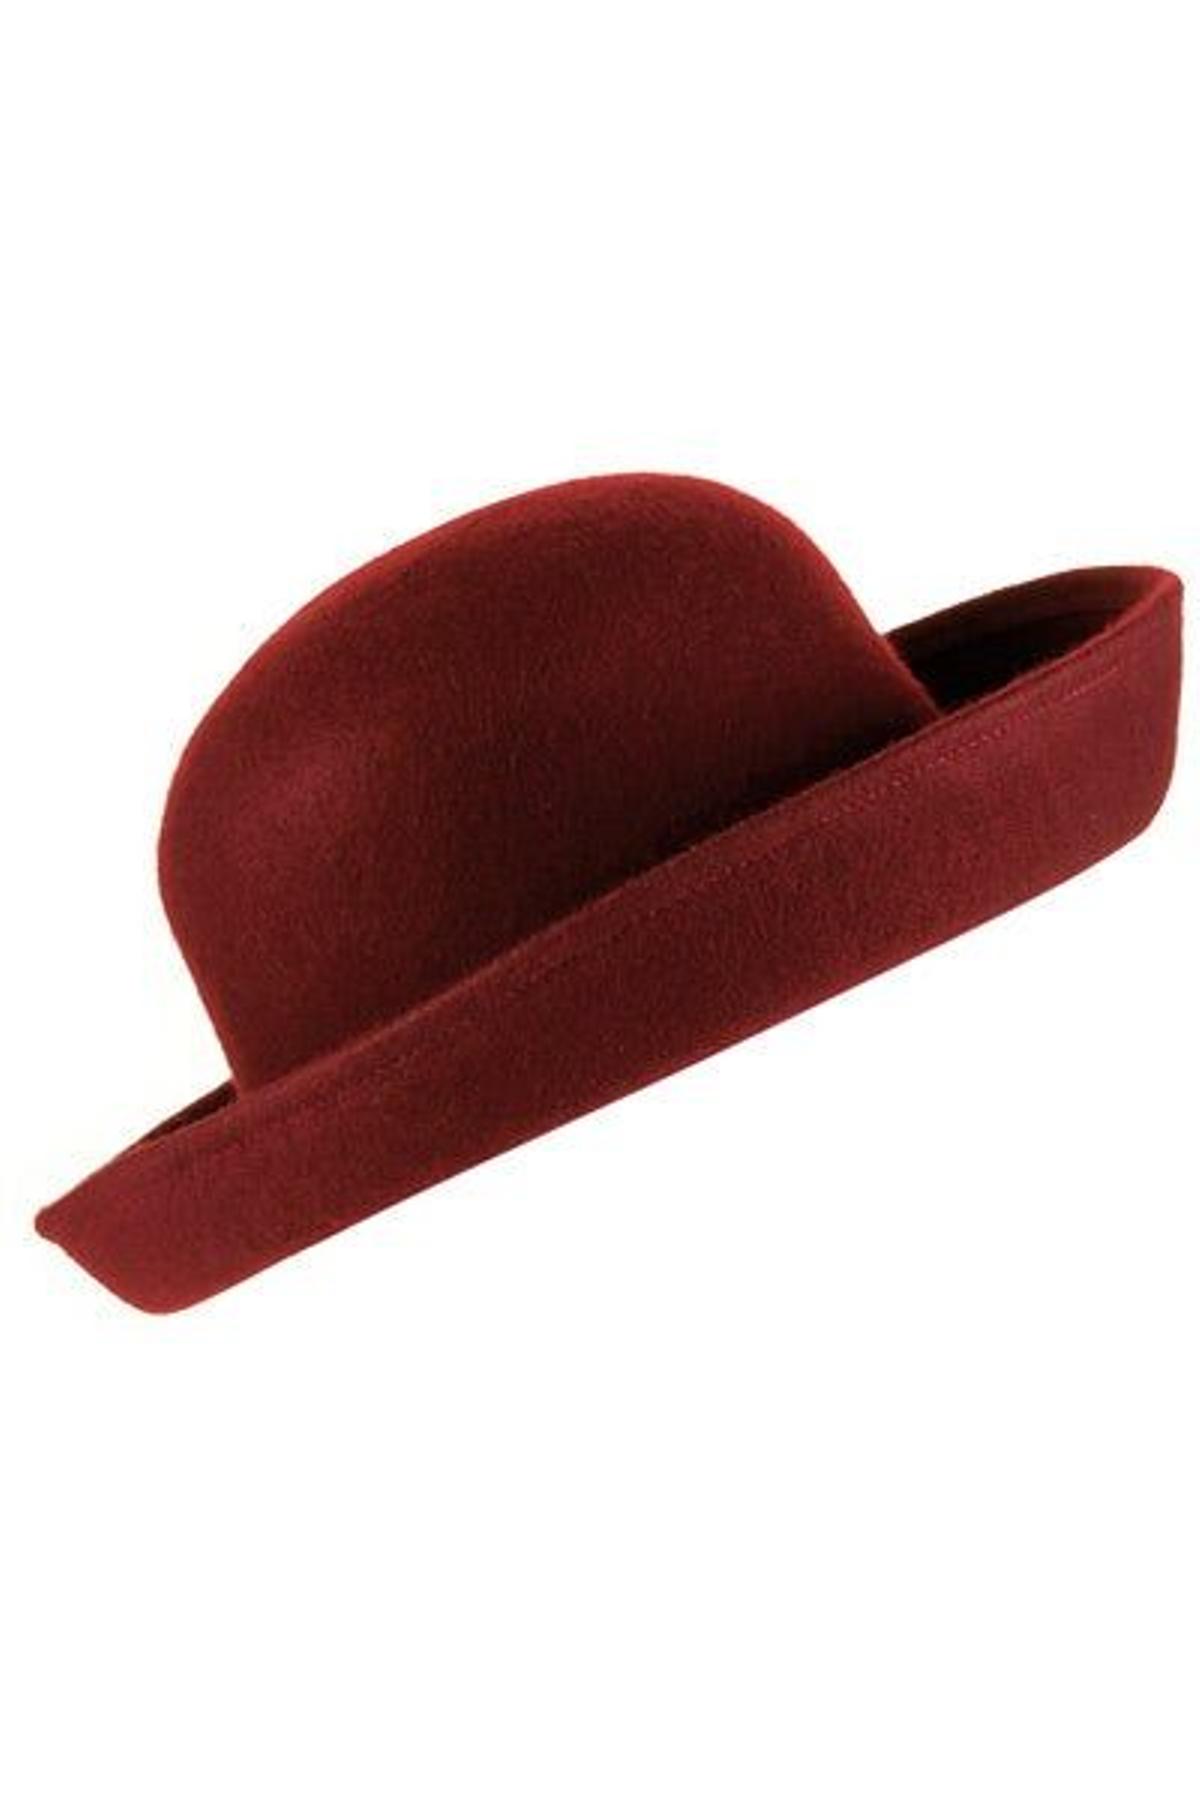 Sombrero de Topshop 22 euros